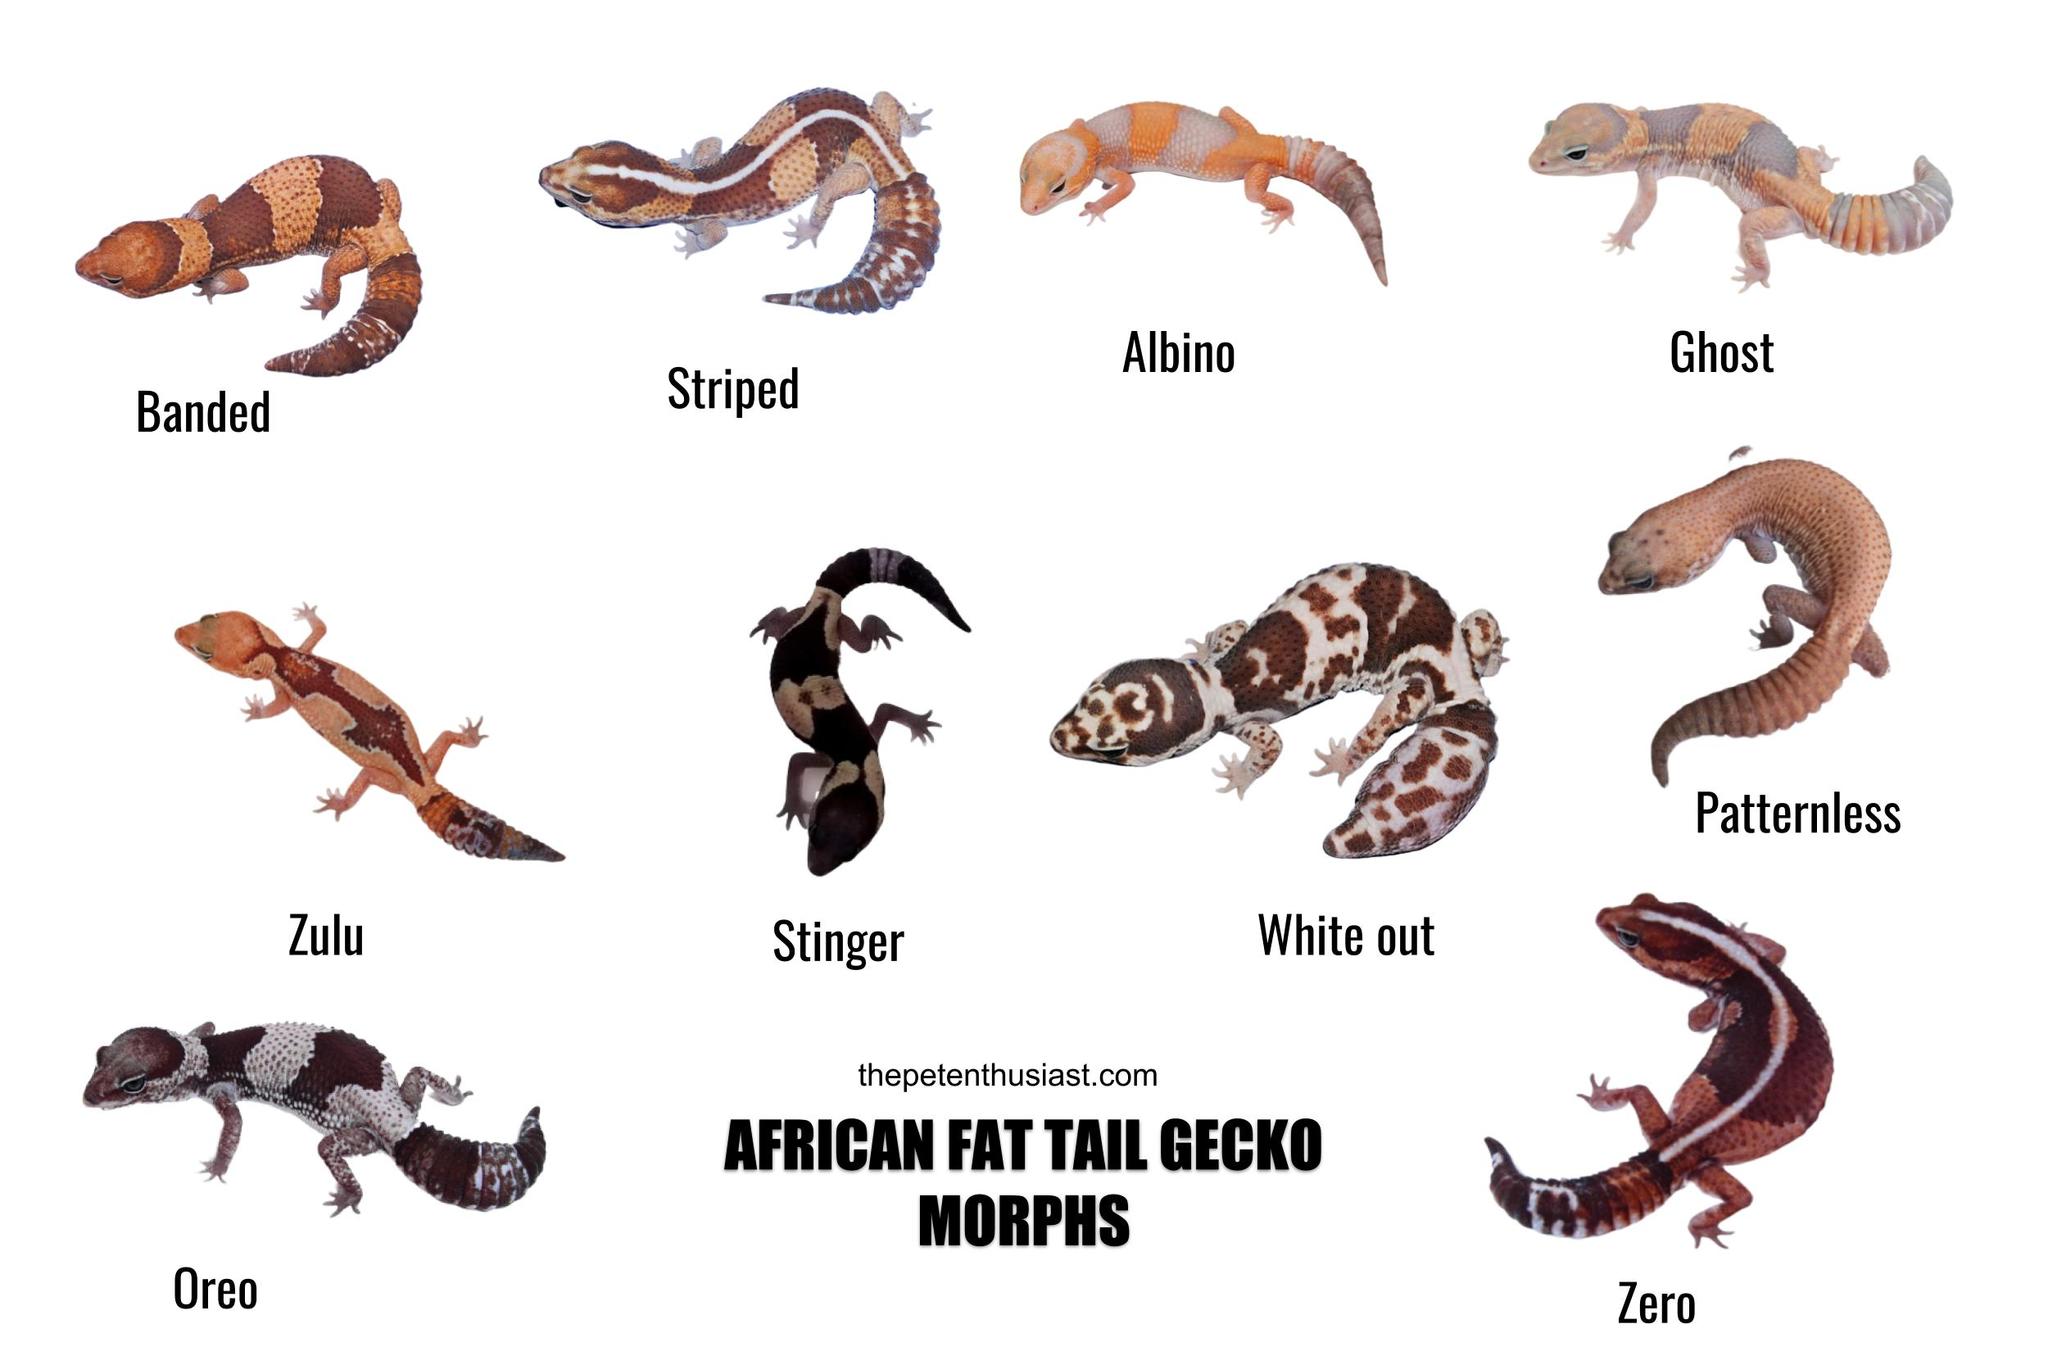 Leopard Gecko Chart